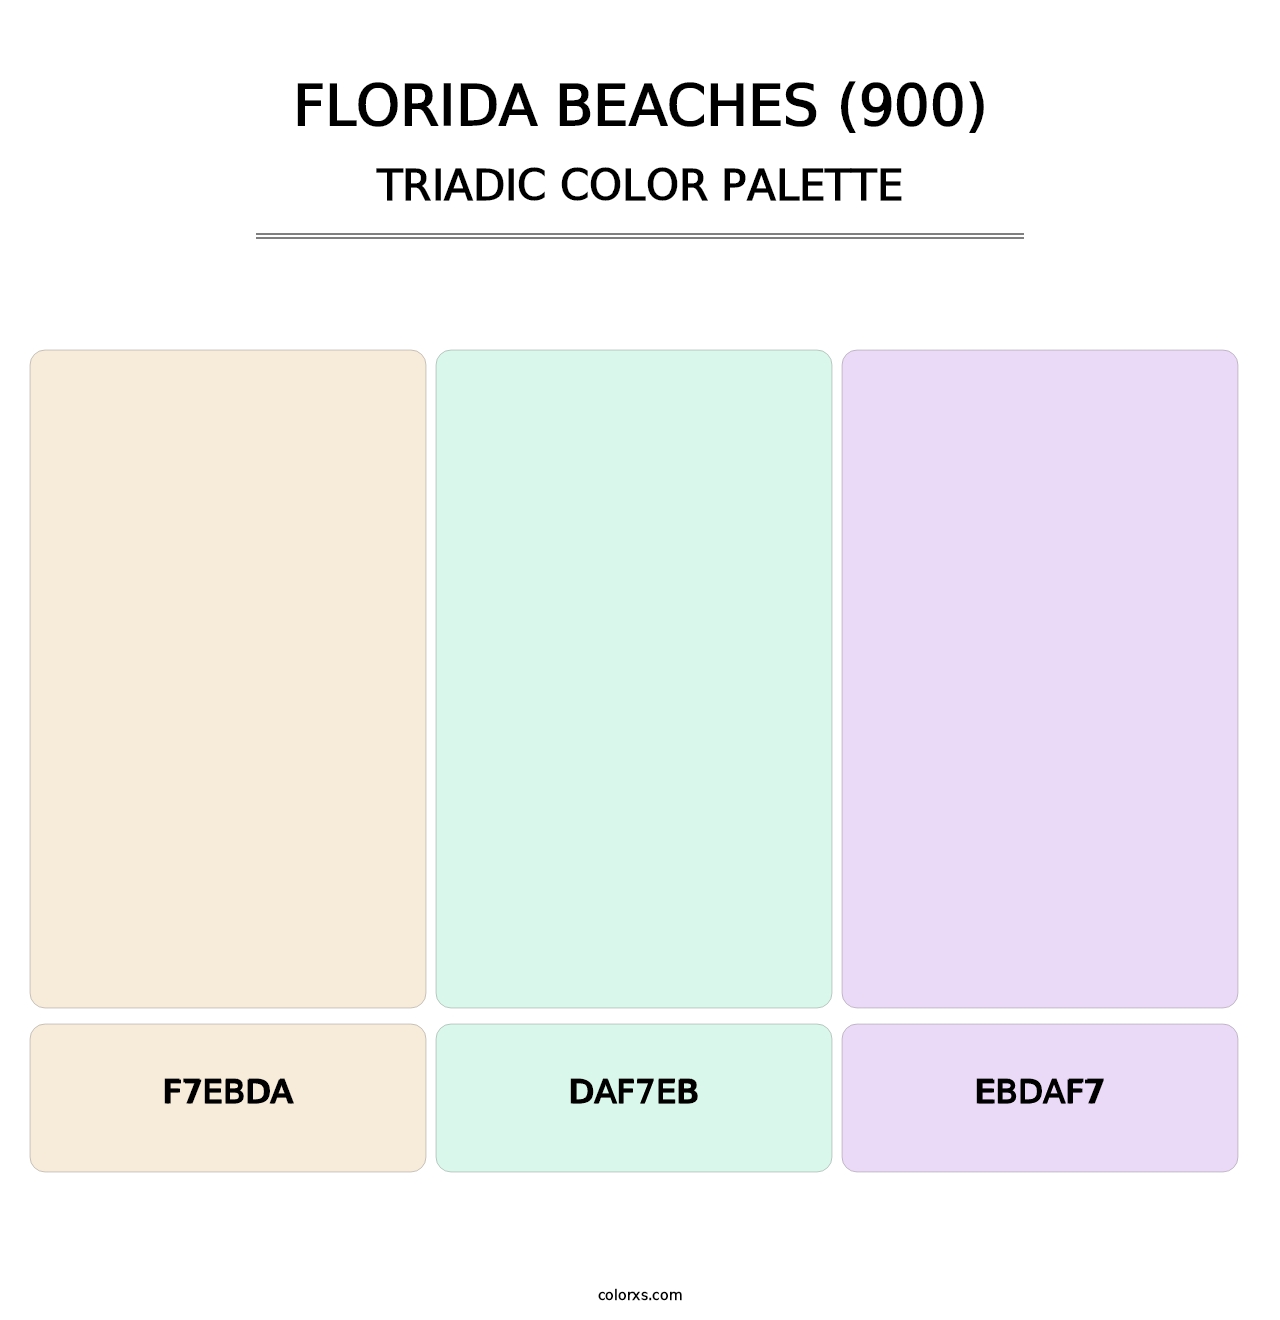 Florida Beaches (900) - Triadic Color Palette